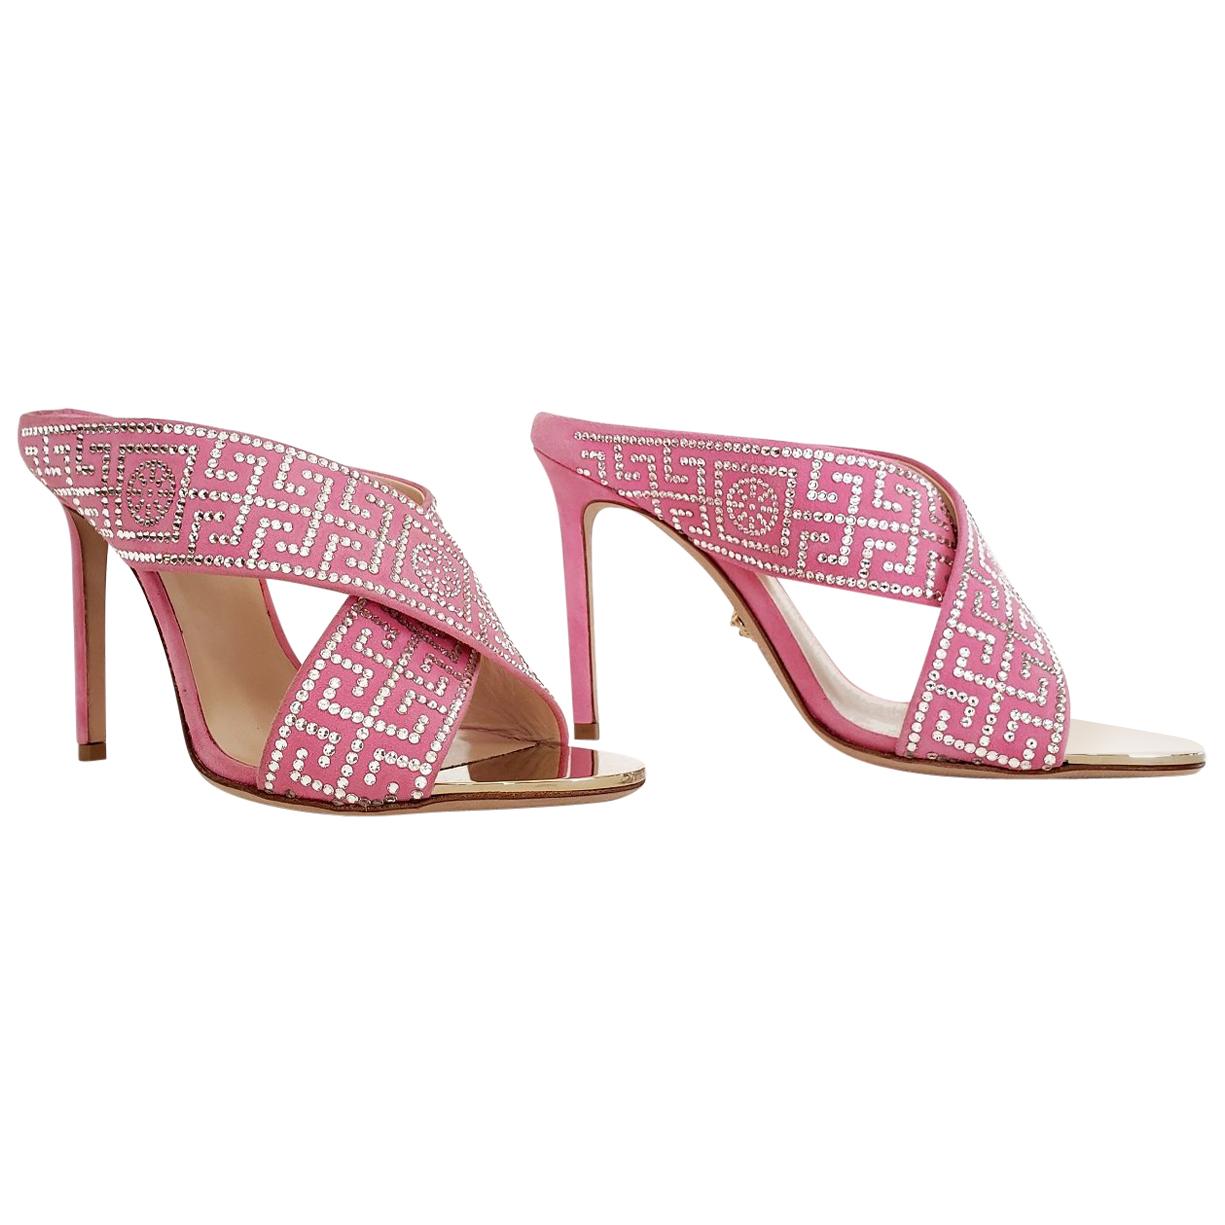 New VERSACE crystal embellished pink sandals 36.5 - 6.5